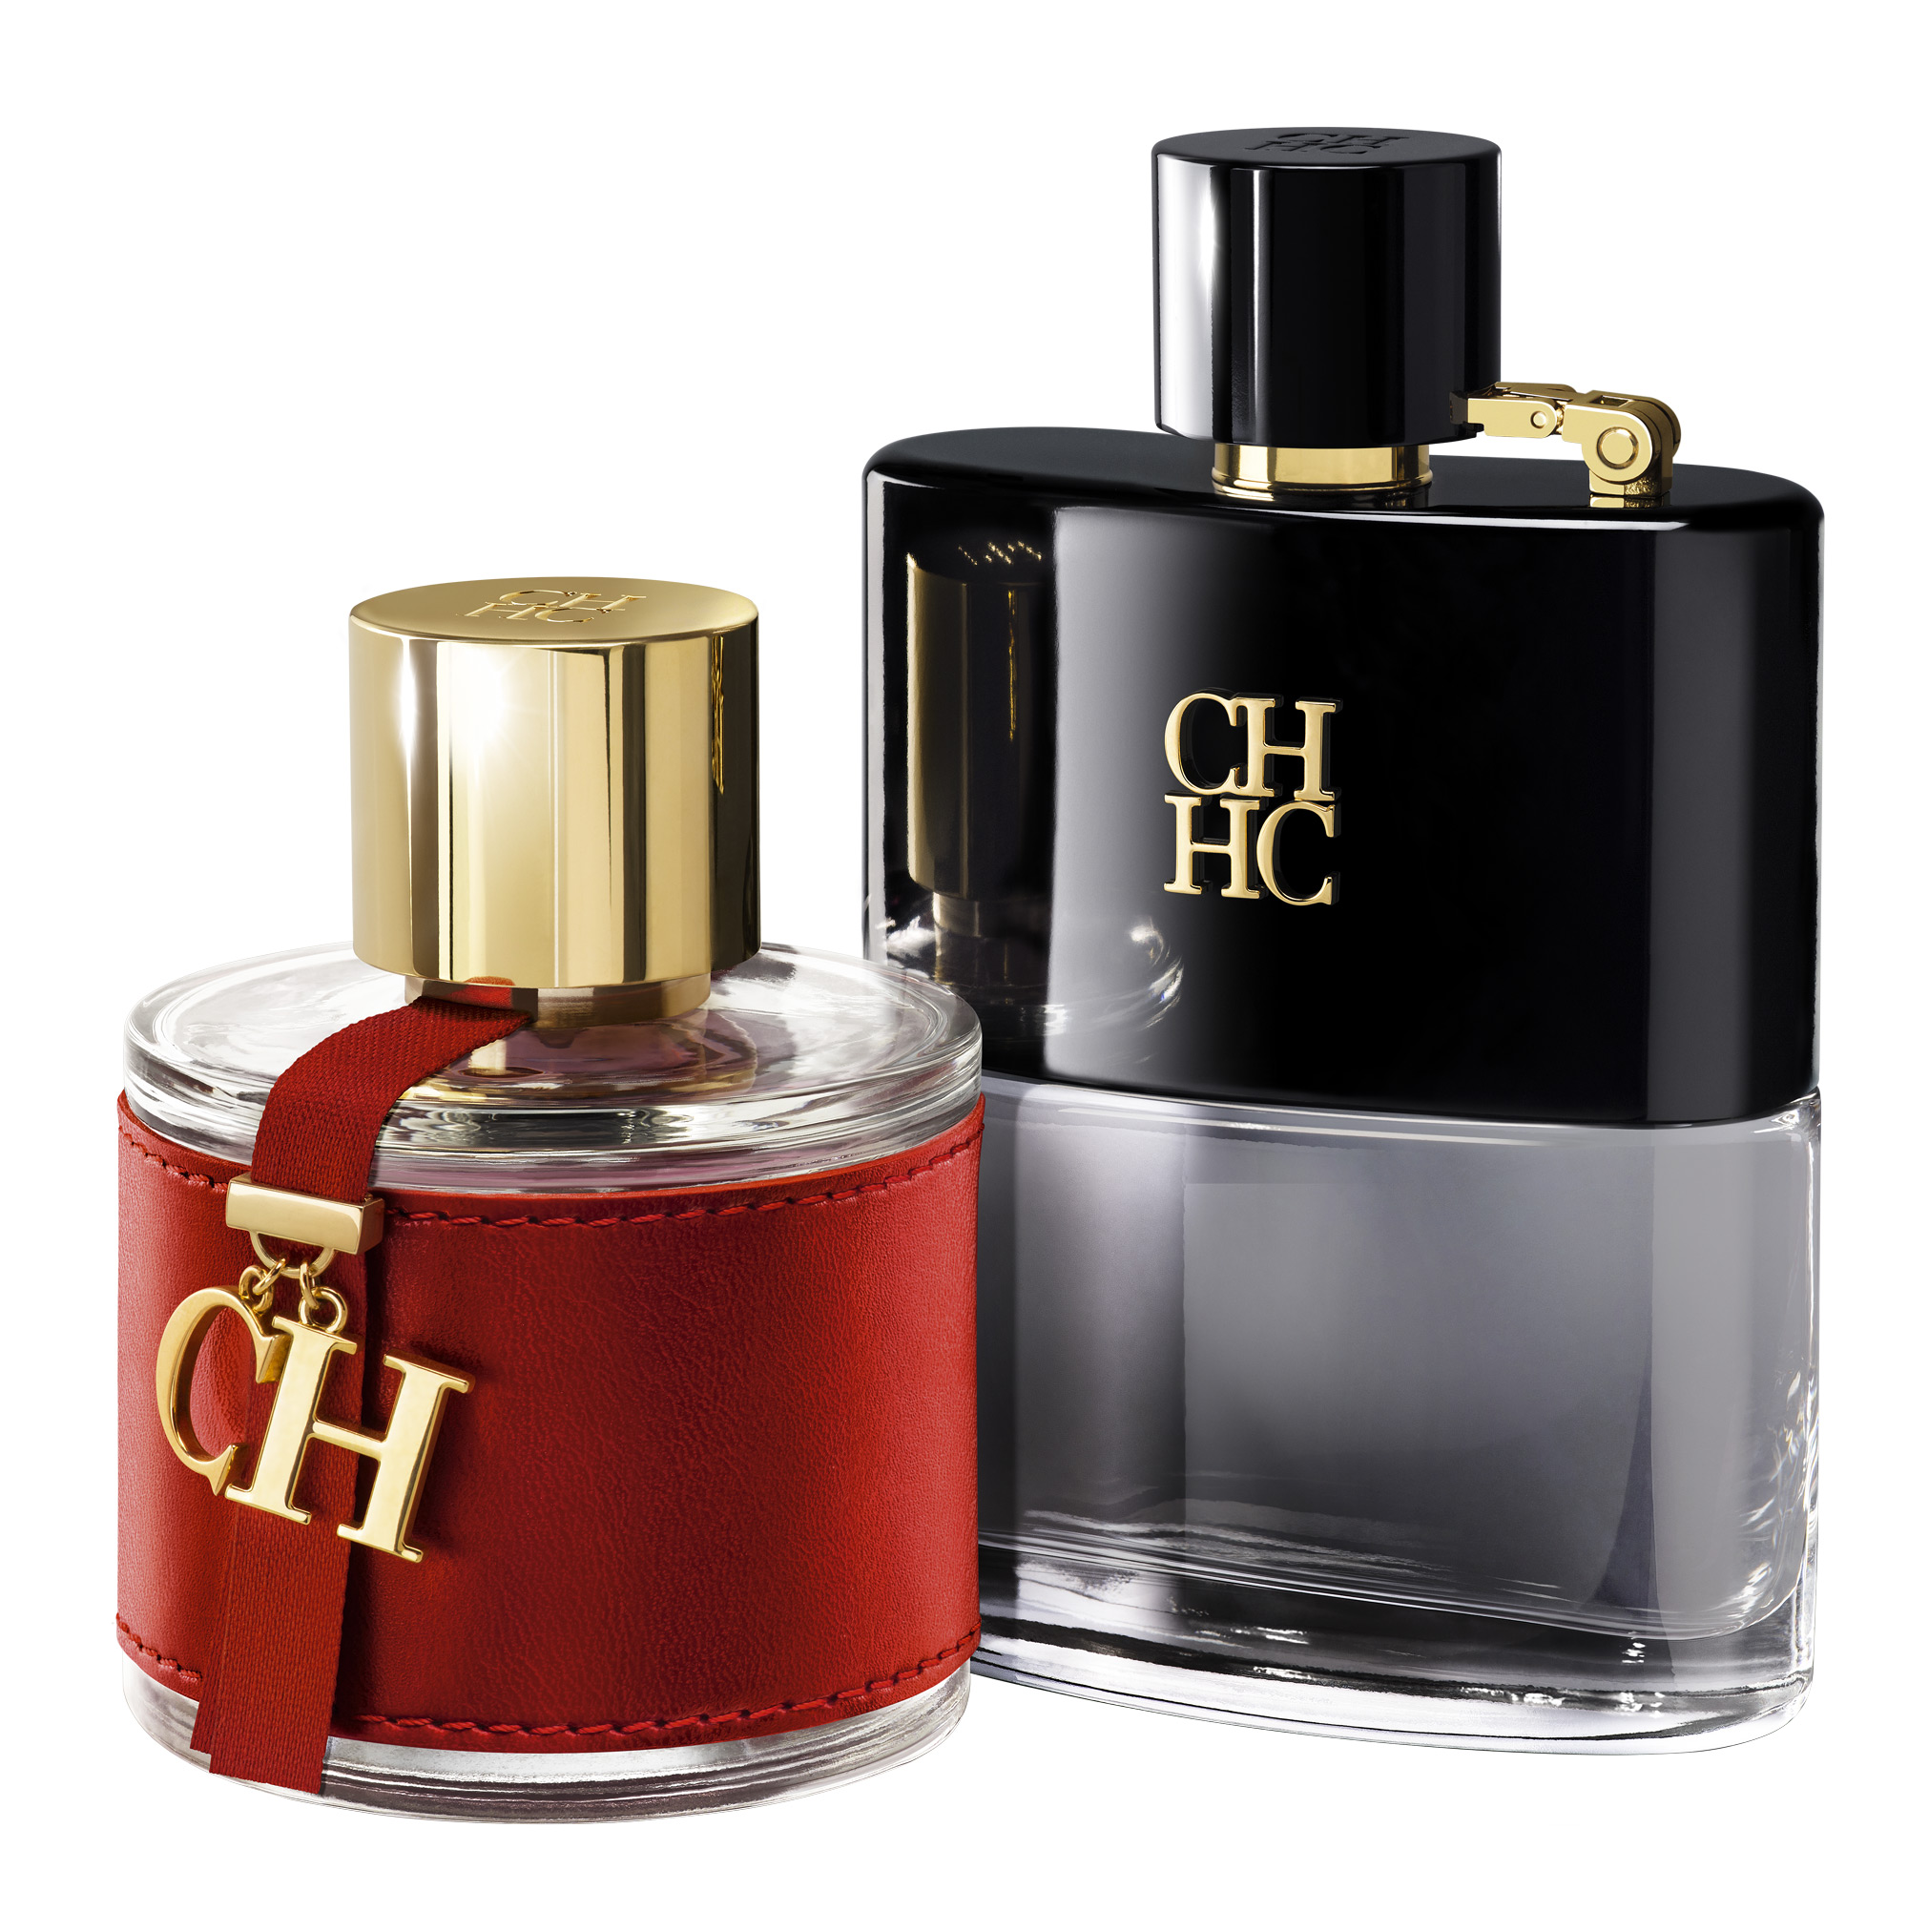 Parfum C&f Best Seller Pria - Homecare24